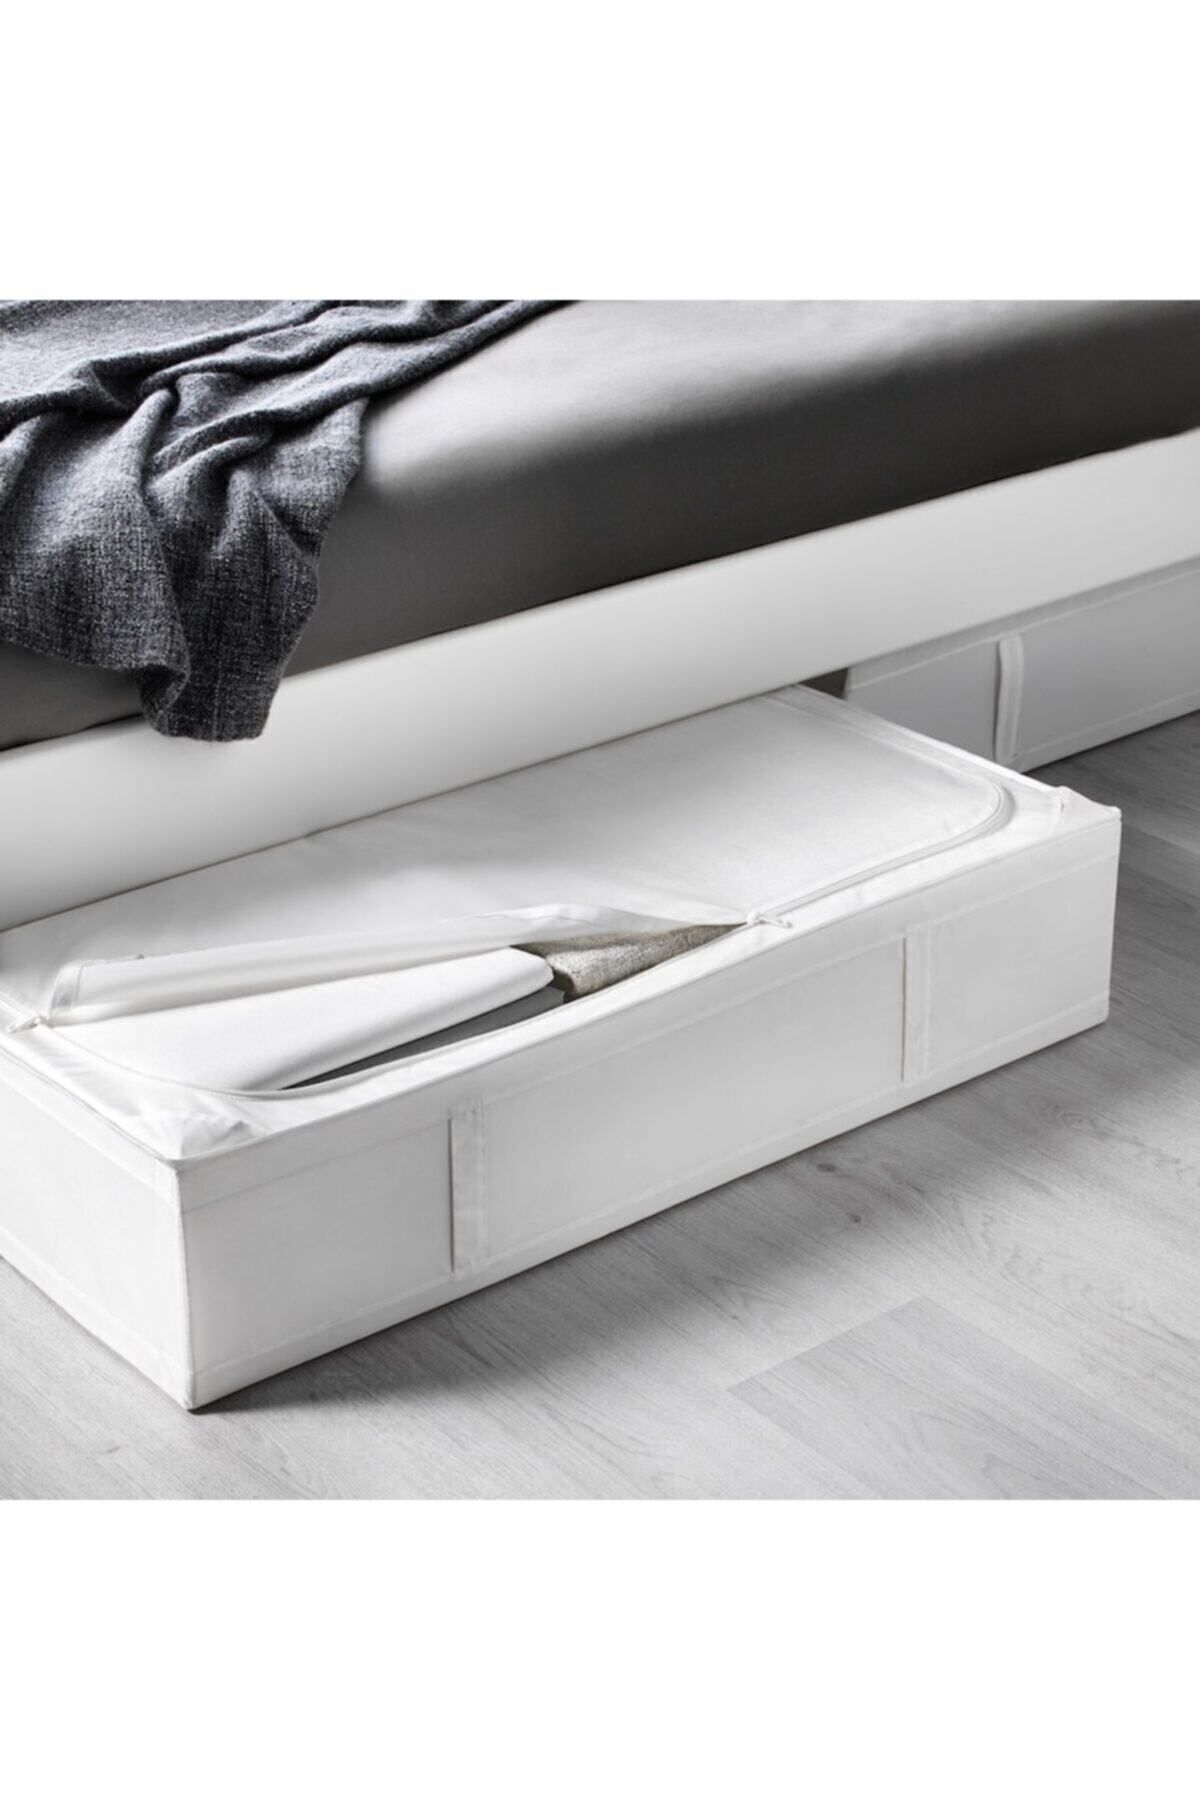 IKEA 90x53x19 Cm Beyaz Hurç Yatak Altı Yastık Çarşaf Nevresim Giysi Saklama Kutusu Hurç Kutu